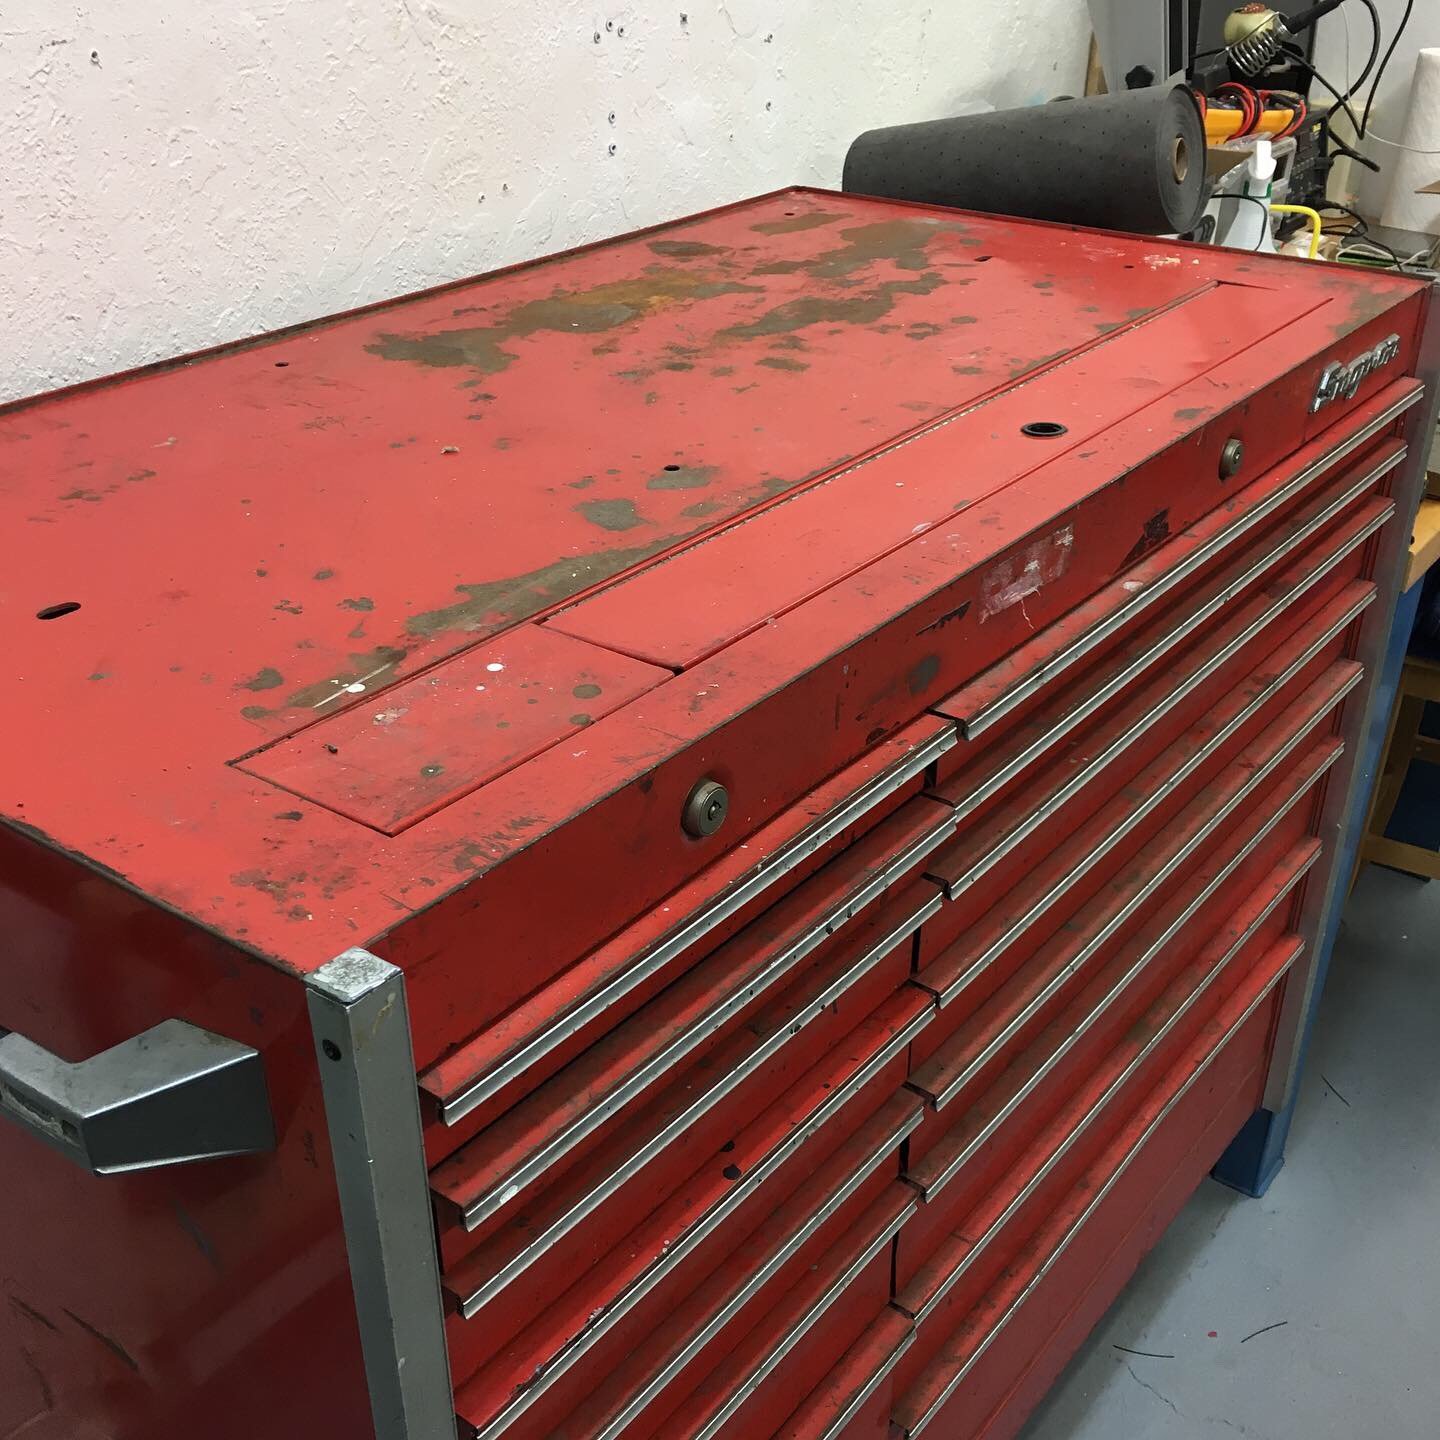 Original toolbox